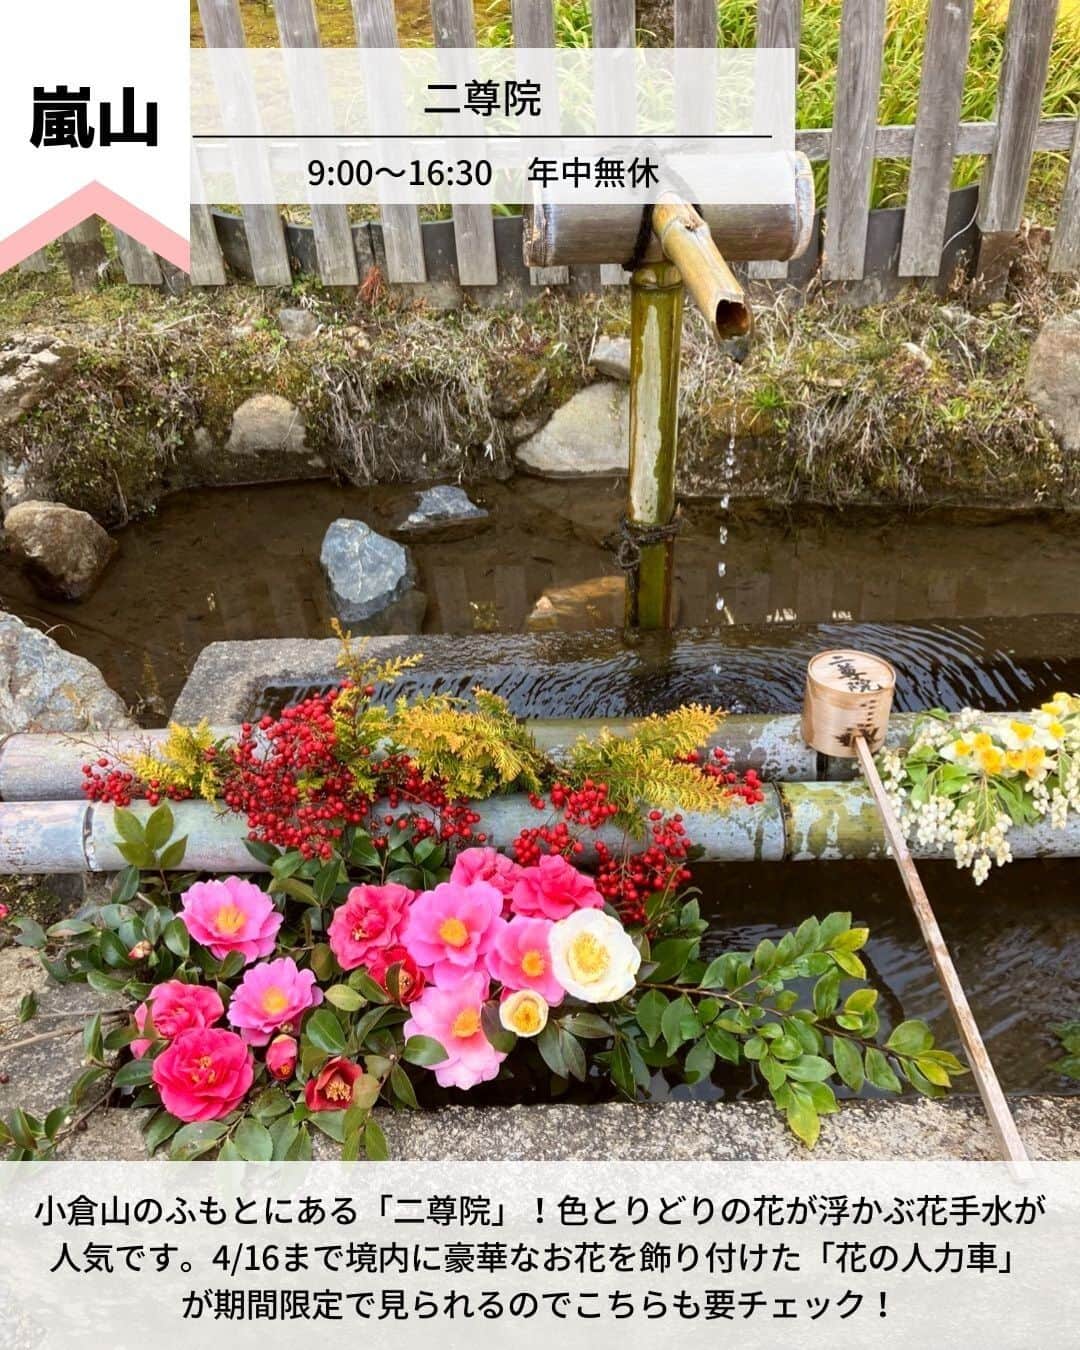 旅工房公式さんのインスタグラム写真 - (旅工房公式Instagram)「＼京都春旅で絶対行きたいスポットまとめ／  #京都 #京都女子旅   今回は、京都の春に行きたいおすすめスポットをご紹介します♪  観光情報やグルメまでまとめているので、ぜひ参考にして訪れてみてください＼(^o^)／ 💚    ━━━━━━━━━━━━━━━  ▽お写真ありがとうございます❣   📍二尊院 @kikko0630さん  小倉山のふもとにある「二尊院」！  色とりどりの花が浮かぶ花手水が人気です。  4/16まで境内に豪華なお花を飾り付けた「花の人力車」が期間限定で見られるのでこちらも要チェック！   【アクセス・案内】  嵐電「嵐山駅」徒歩15分  JR線「嵯峨嵐山駅」徒歩20分  営業時間：9:00～16:30　年中無休    📍岡崎神社 @ma.cocoroさん  うさぎ年の2023年に行きたい岡崎神社！  こちらでは「狛犬」ではなく「狛うさぎ」が鎮座しています♪  「うさぎみくじ」がずらっと並ぶ景色がとてもフォトジェニック◎   【アクセス・案内】  市バス32番、203番、93番、204番「岡崎神社前」下車後すぐ  市バス 5番「東天王町」下車　京阪　神宮丸太町駅下車後すぐ　  地下鉄東西線　蹴上駅下車後すぐ  営業時間：9:00〜17:00　年中無休   📍東寺 @ nakamuraamさん  春に行きたい桜の名所「東寺」。見どころは樹齢120年のシダレザクラ！  別名「不二桜」と呼ばれており、その立派な佇まいから地元の人からも観光客からも大人気のスポット♪   【アクセス・案内】  「京都駅」八条口より徒歩15分  「東寺駅」より徒歩10分  営業時間：営業時間は公式HPをチェック！   📍祇園ふじ寅 @ blenda_pechicoさん  古民家のような和の雰囲気が大人気のカフェ。  ランチ限定の「季節野菜のせいろごはん」が人気メニュー！  無くなり次第終了なので、早めの来店がおすすめです。   【アクセス・案内】  京阪祇園四条駅1番出口より徒歩約1分  阪急京都河原町駅1B出口より徒歩約6分  市営地下鉄三条京阪駅2番出口より徒歩約15分  営業時間：［月、火、木、金］11:30～17:30  ［土、日、祝日］11:00～17:30   📍 ryu no hige @ __asamili__さん  京野菜をはじめ、こだわりをもって厳選された旬の食材を使ったフレンチレストラン！  見た目も美しく味も絶品なので、優雅なランチタイムを過ごせること間違いなし♪   【アクセス・案内】  「阪急京都線」烏丸駅　徒歩4分  「京都市営地下鉄烏丸線」四条駅　徒歩2分  営業時間：11:30〜13:30/17:30〜20:00   📍包華堂 @ nan_yun01さん  フルーツとあんこを自分で包むフルーツ大福専門店！  様々な種類のあんこから、自分の好きな3種類を選べるので、自分好みの組み合わせのフルーツ大福を楽しめますよ◎   【アクセス・案内】  烏丸御池駅より徒歩2分  営業時間：［平日］11:00～18:00（L.O.17:00）  ［土日祝］11:00～19:00（L.O.18:00）   ━━━━━━━━━━━━━━━    ※新型コロナウイルス感染拡大の影響により営業時間・内容は変更になる場合がございます。詳しくは各ホームページをご確認ください。    海外・国内問わず、素敵なスポットやグルメ、アイテムの写真にはぜひ #旅工房 や @tabikobo をタグ付けして下さい💕     #京都春旅 #京都スポット #京都カフェ #京都グルメ  #カフェ巡り #抹茶スイーツ #フルーツ大福  #包華堂  #和スイーツ #ryunohige #京都ランチ #祇園ふじ寅 #東寺  #京料理 #岡崎神社  #二尊院  #tabijyo #タビジョと繋がりたい #旅行計画 #旅したくなるフォト #旅行行きたい #旅行好きな人と繋がりたい #nexttrip #花手水 #旅工房国内 #国内旅行」3月20日 12時05分 - tabikobo